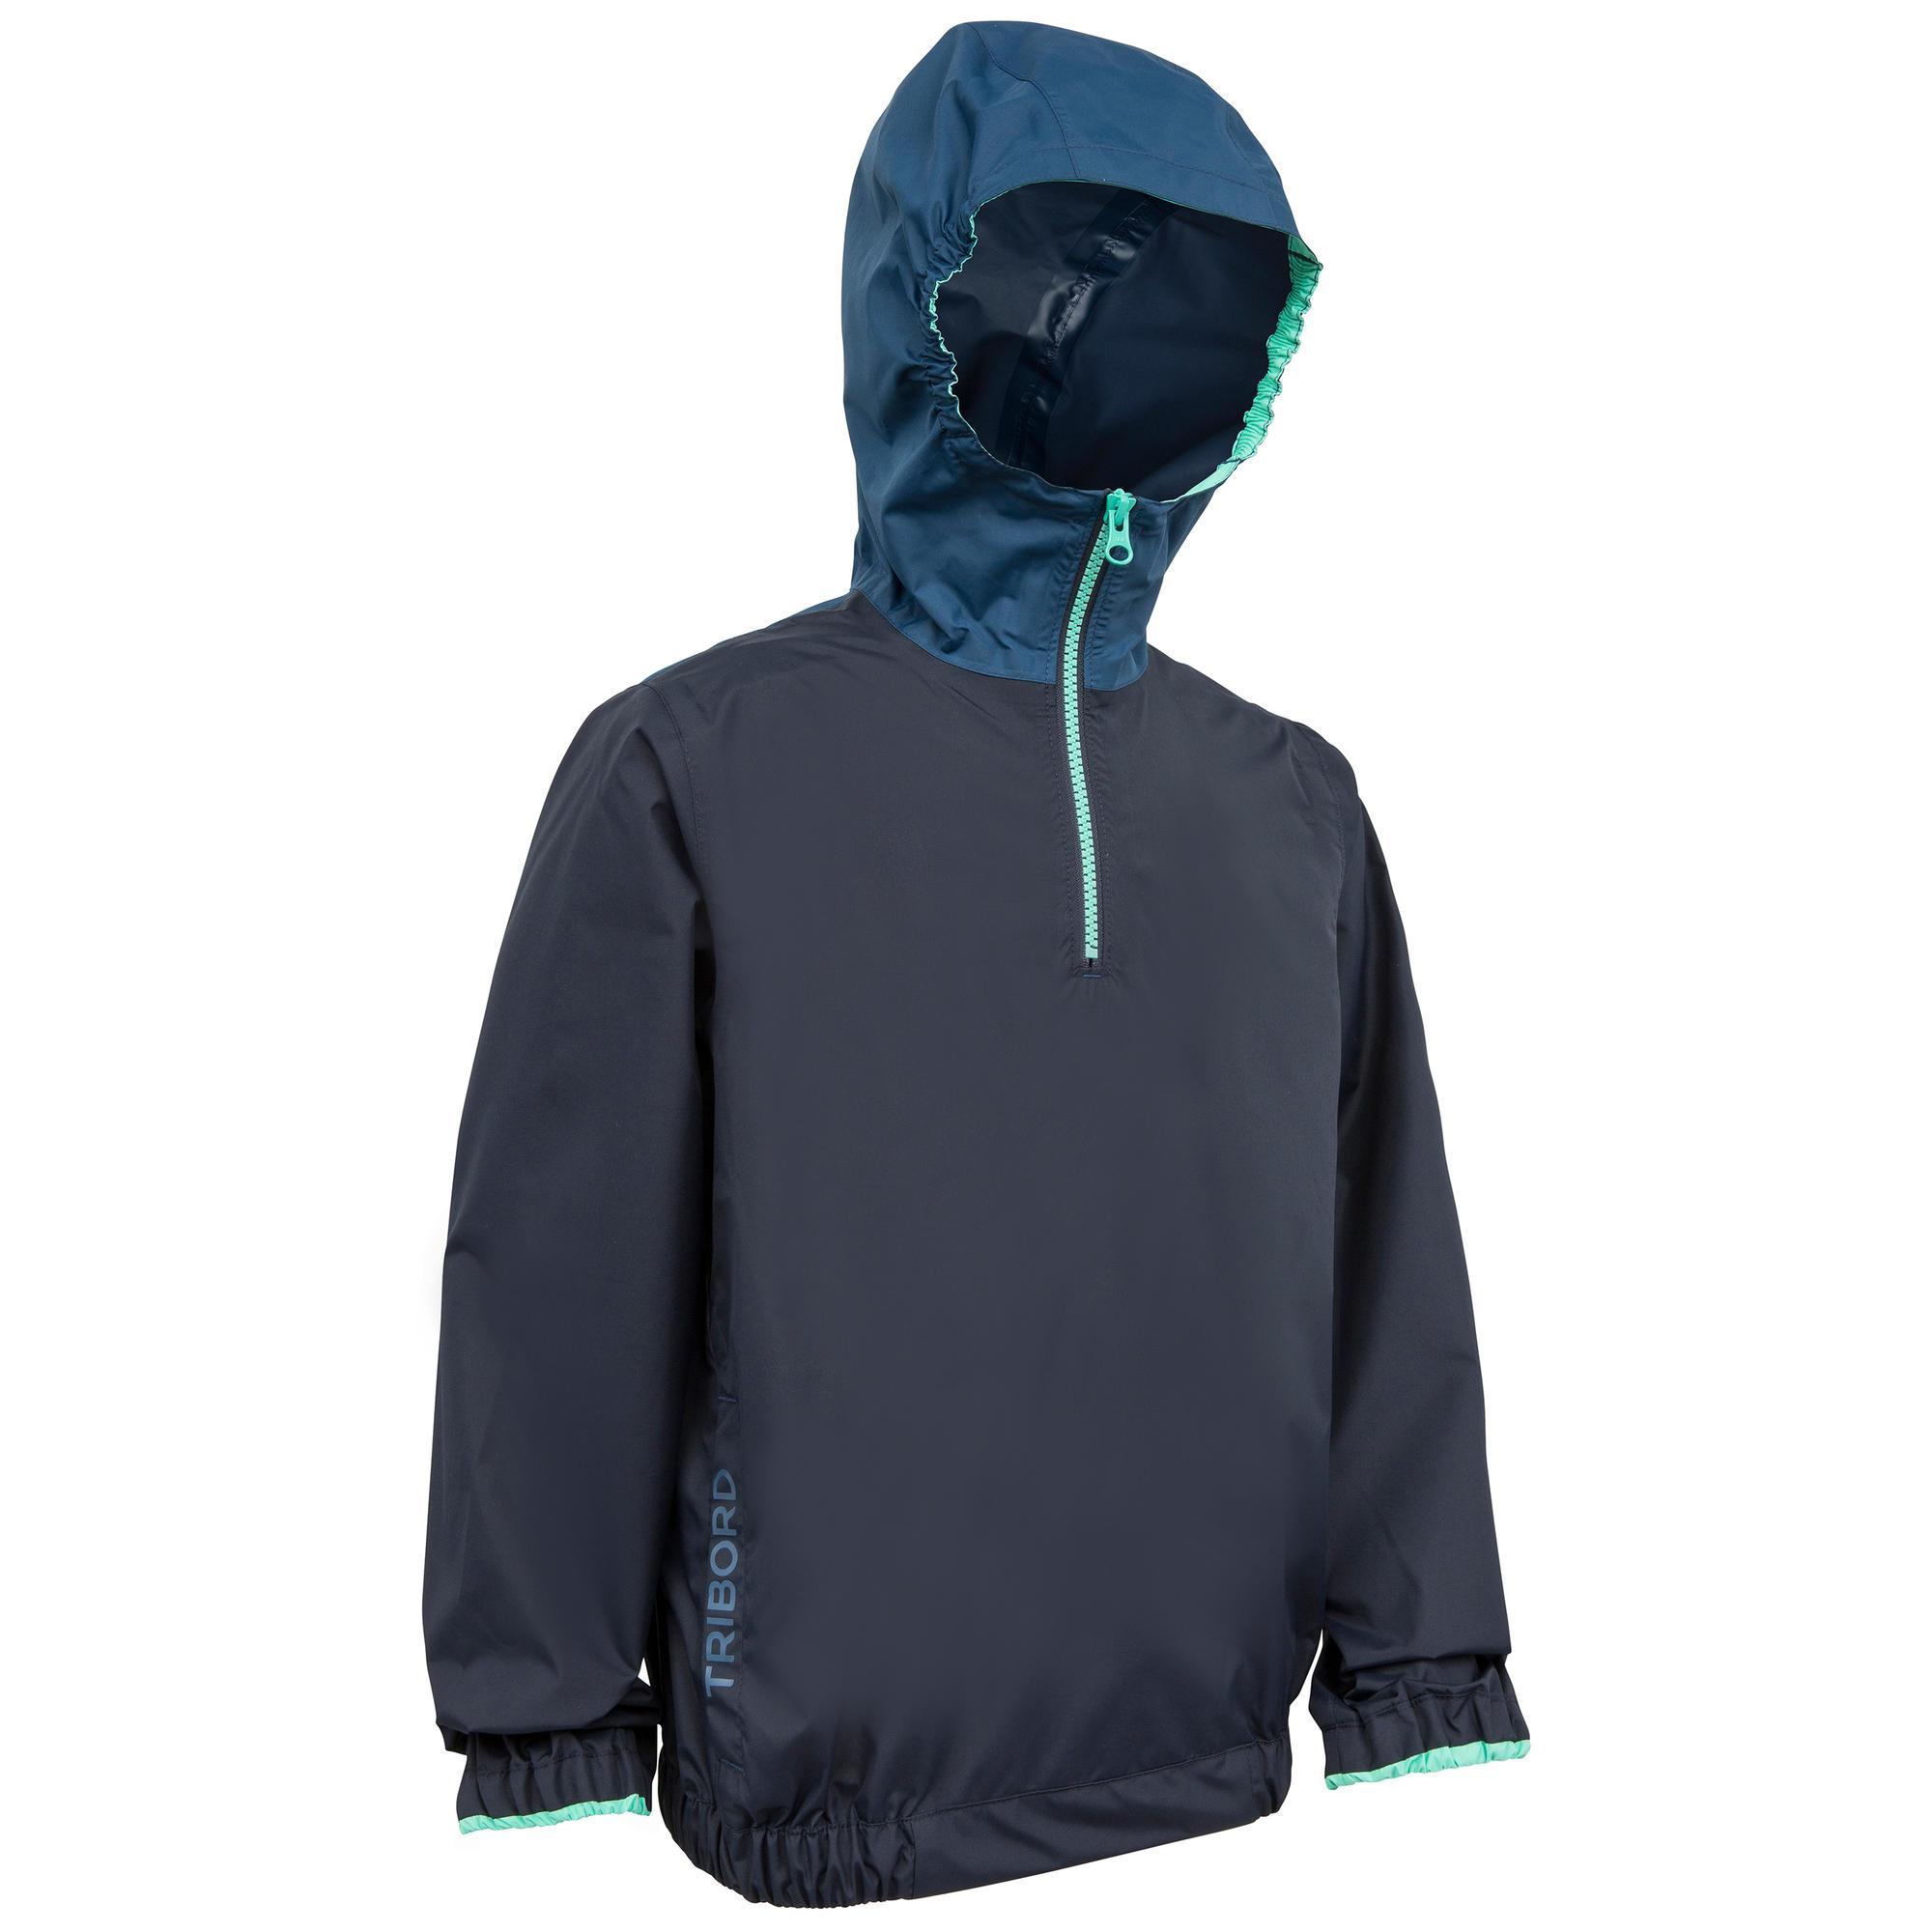 Jachetă Protecție vânt Dinghy 100 Albastru Copii La Oferta Online decathlon imagine La Oferta Online